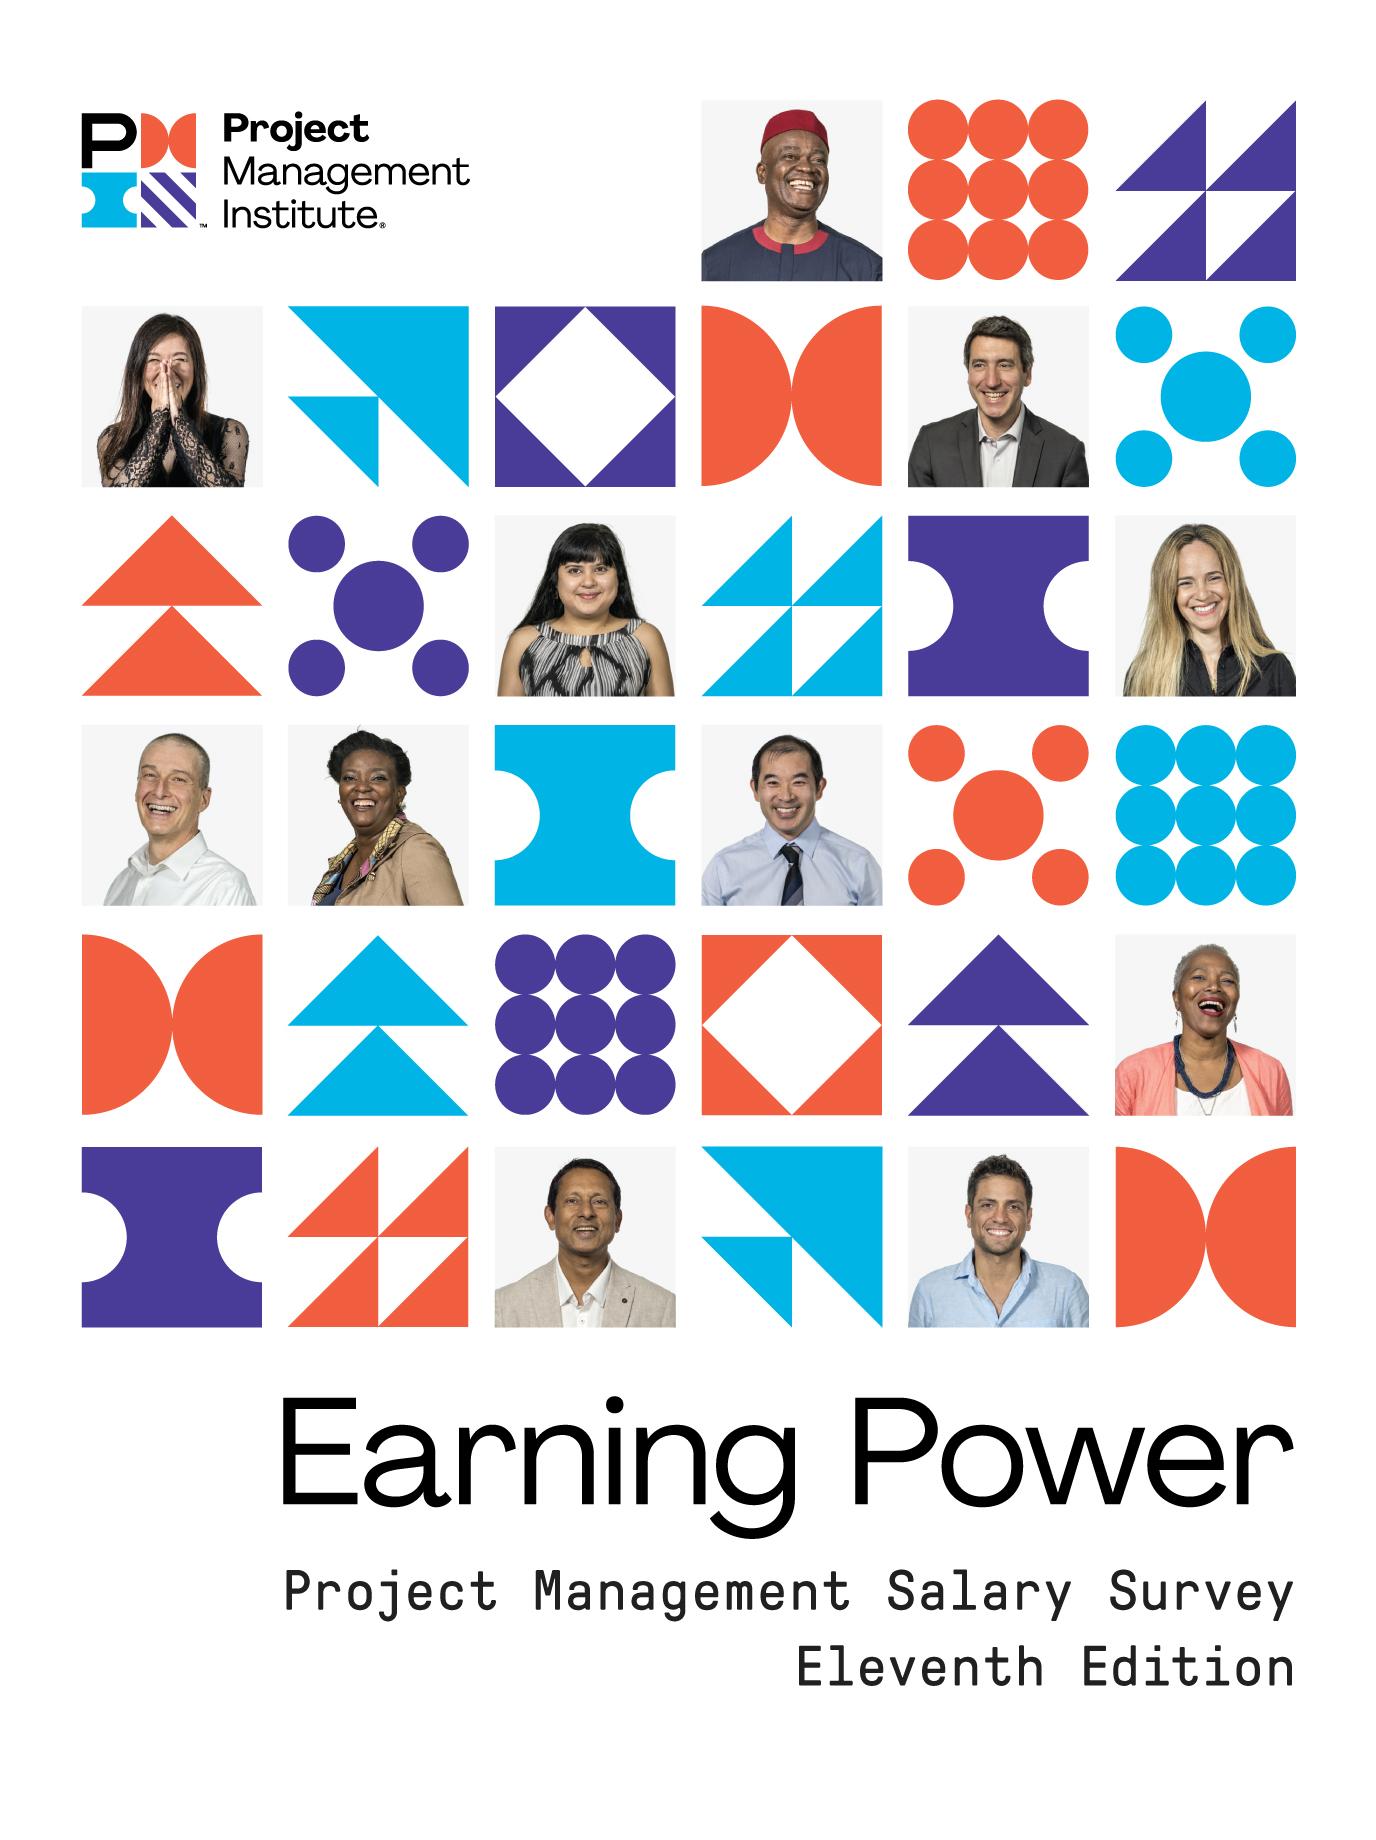 salary-survey-11th-edition-1376x1840-cover.jpg